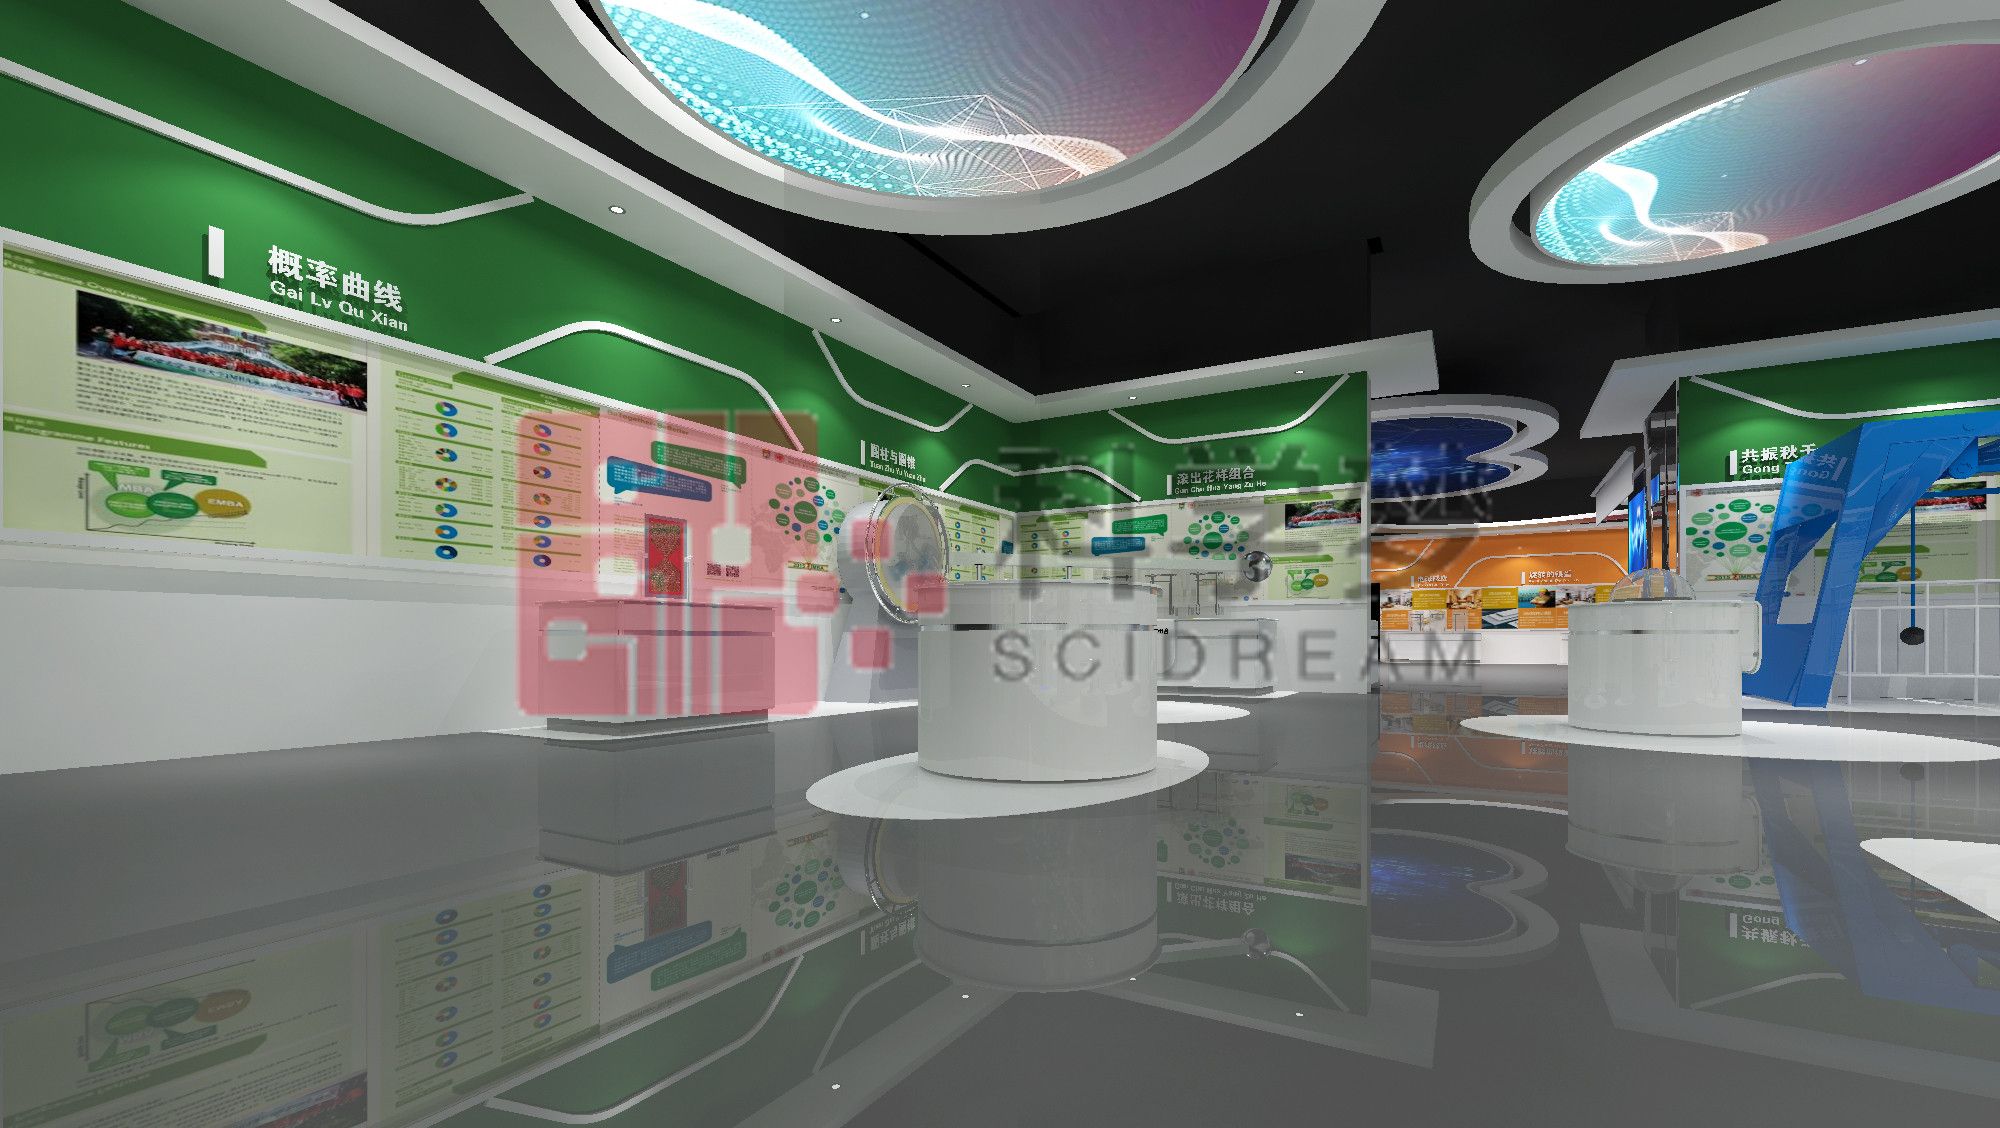 基础科学校园展厅设计: 创新、互动与启迪的交汇点